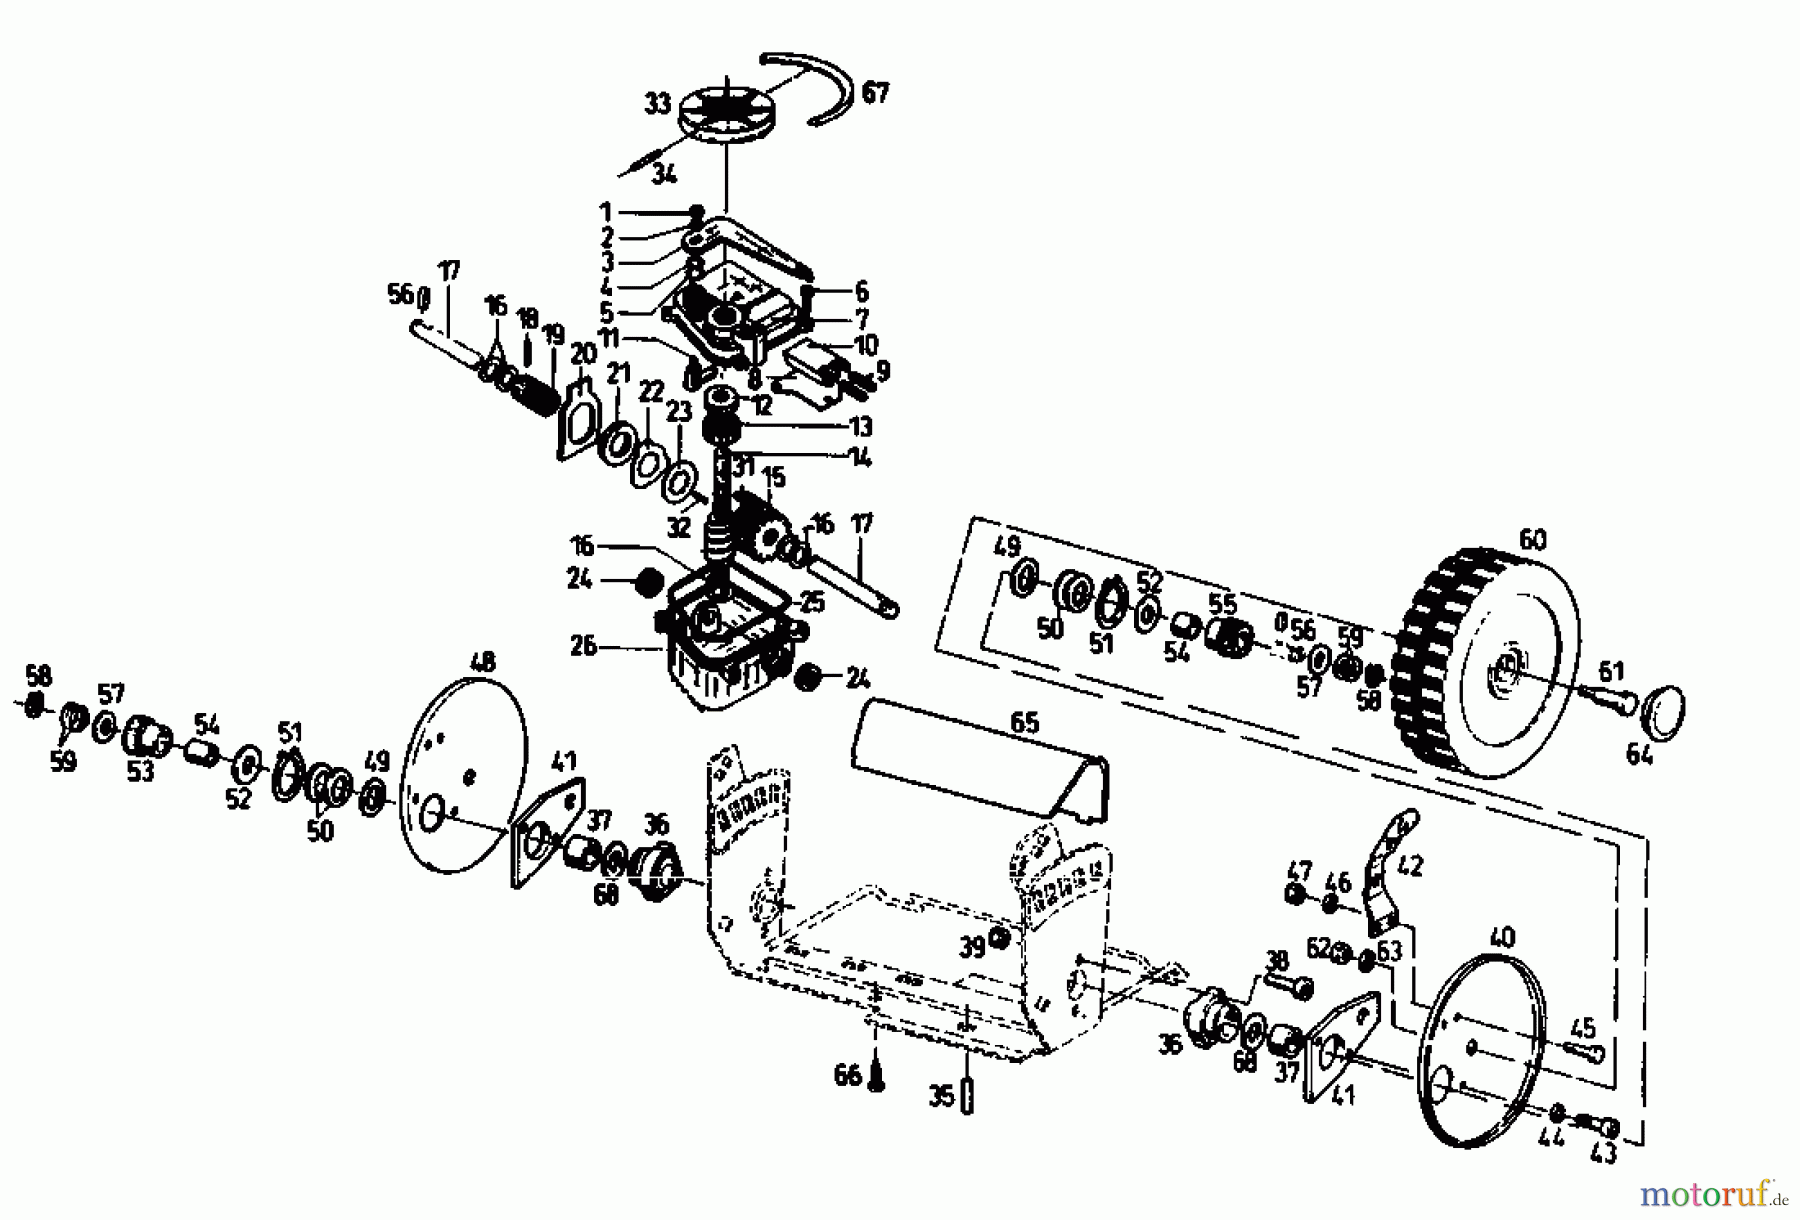  Gutbrod Motormäher mit Antrieb TURBO HBSR-2 T 04011.09  (1993) Getriebe